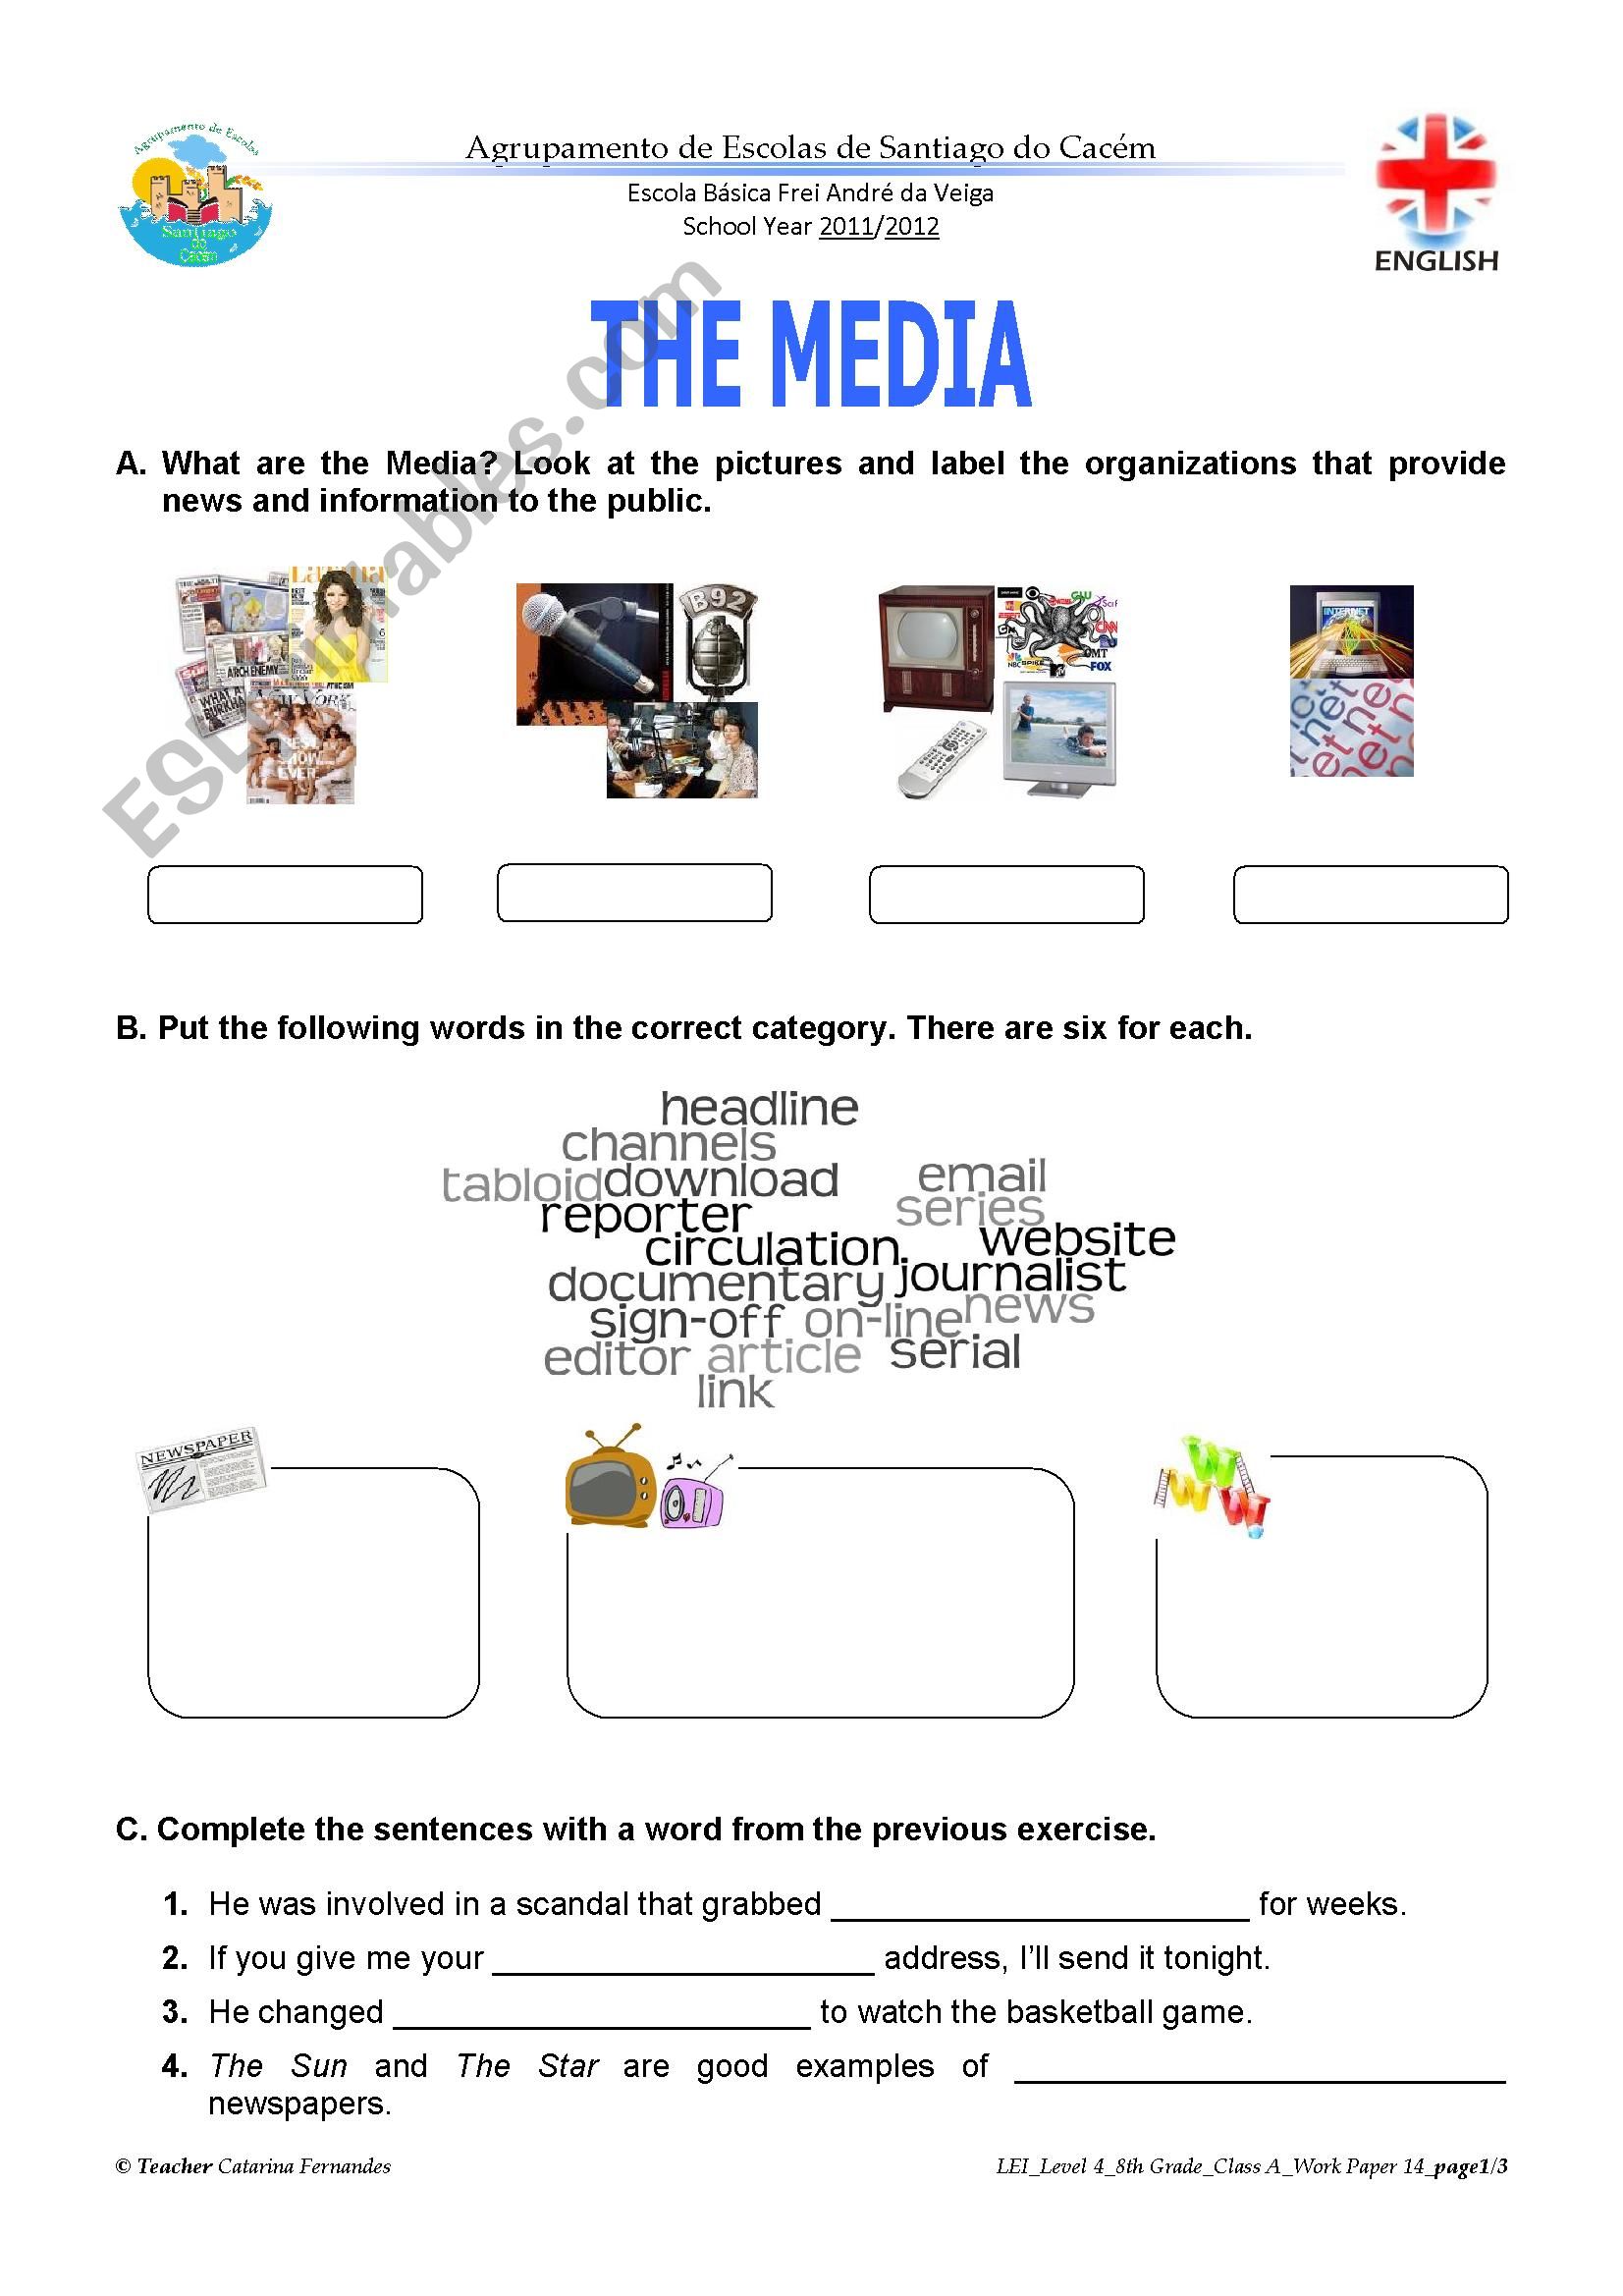 The Media worksheet